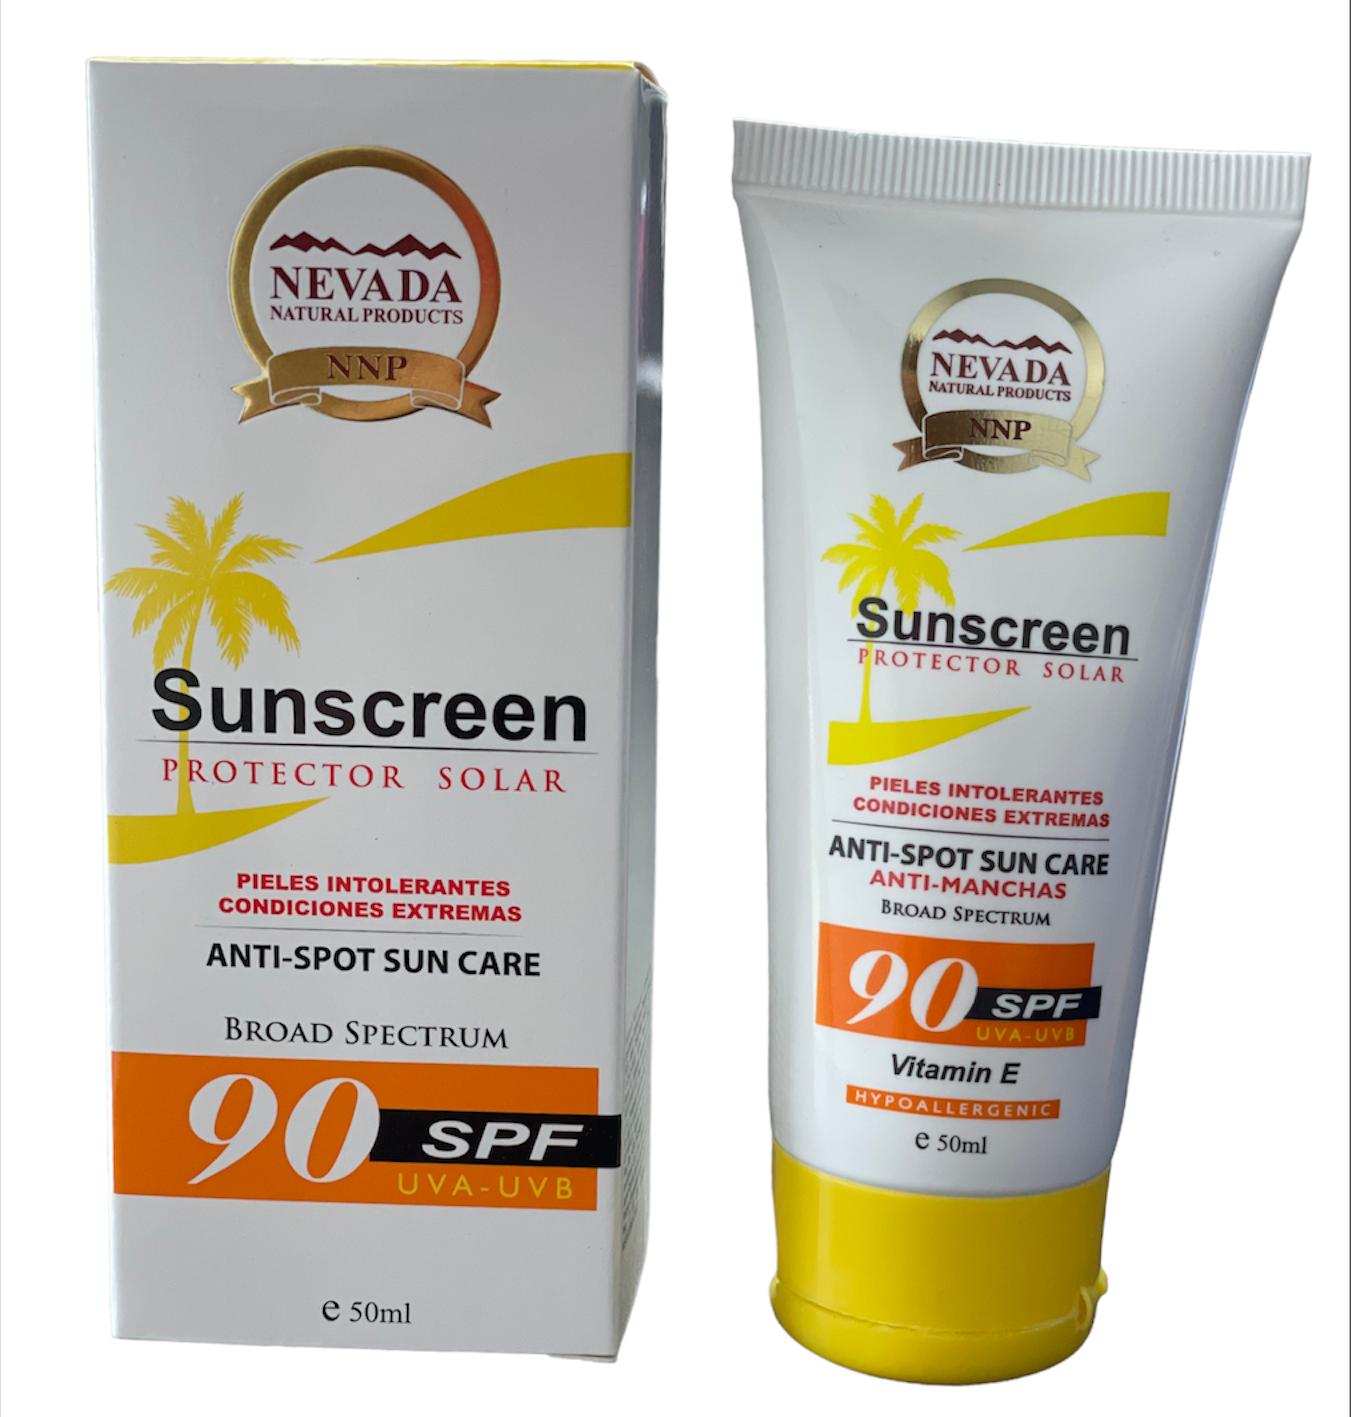 Sunscreen Nevada (90 SPF) 3.4 fl oz